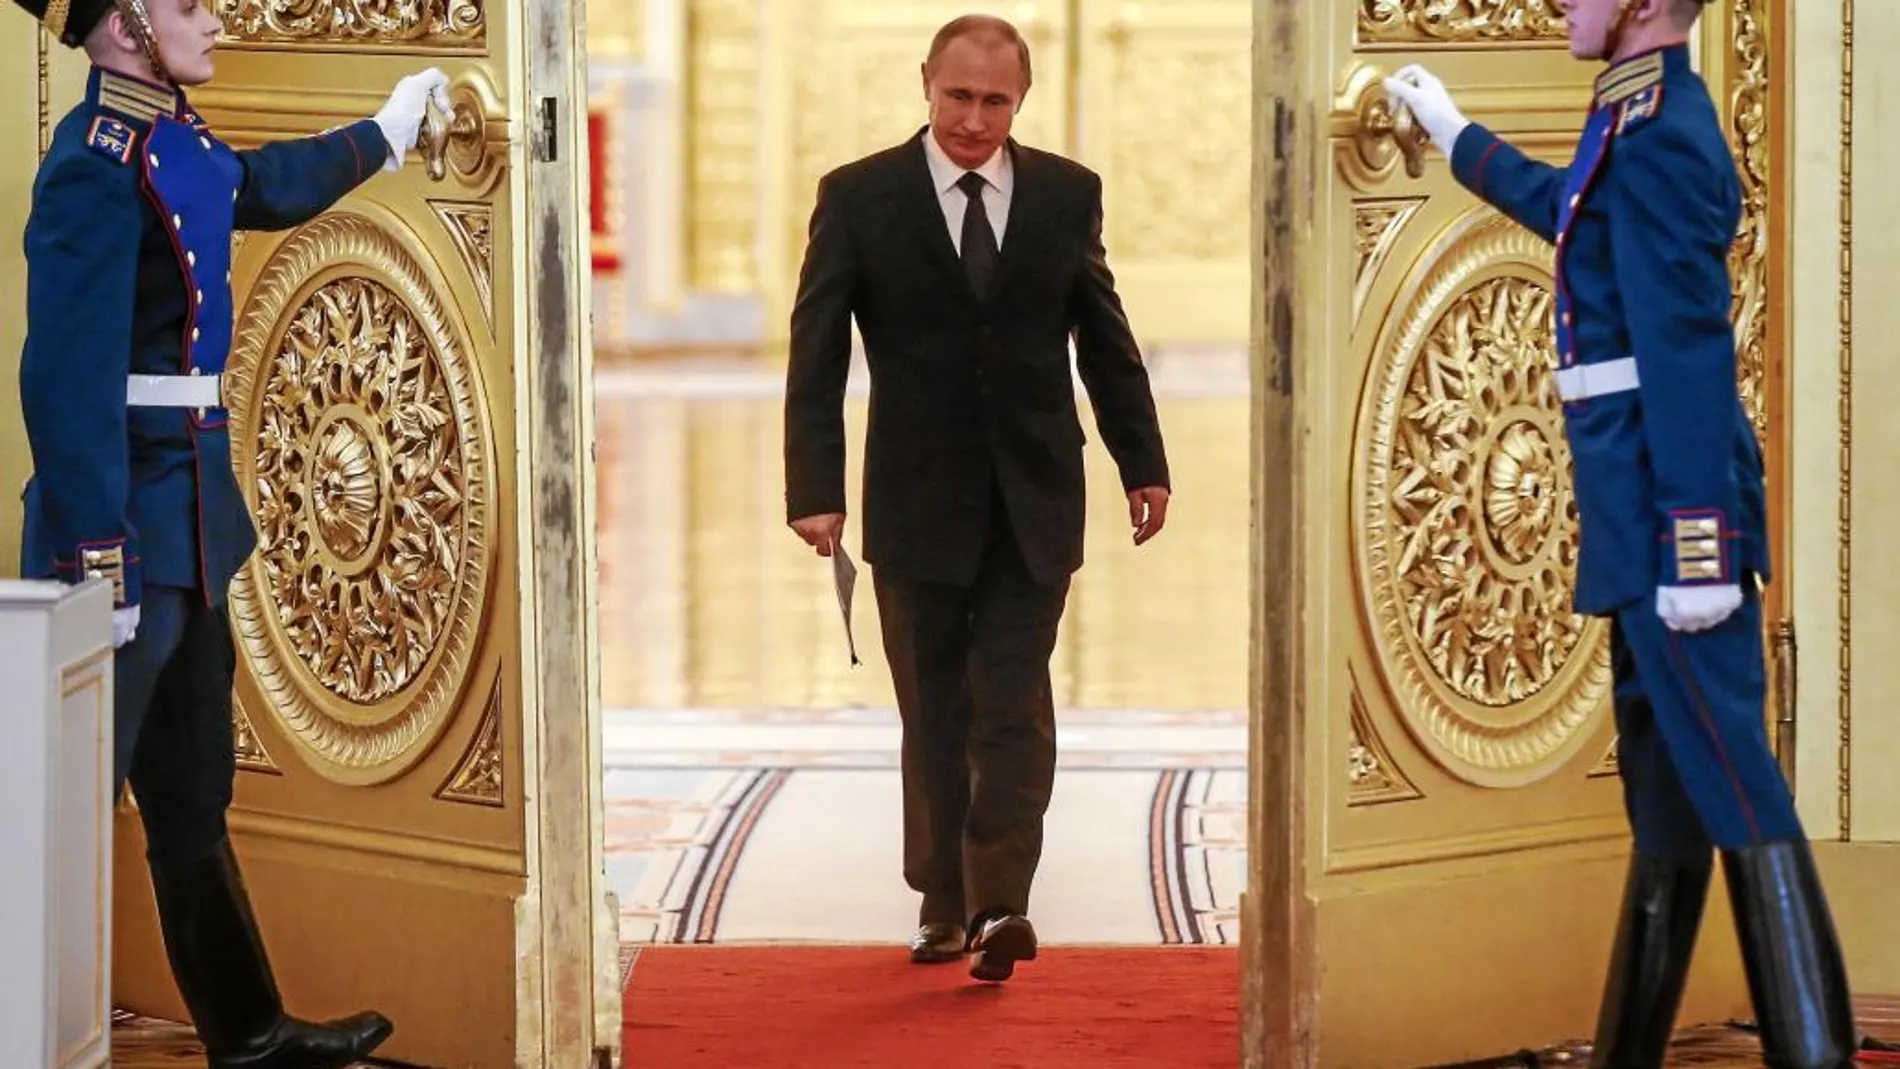 Dos guardias abren las puertas al presidente ruso, Vladimir Putin, en una ceremonia en el Kremlin